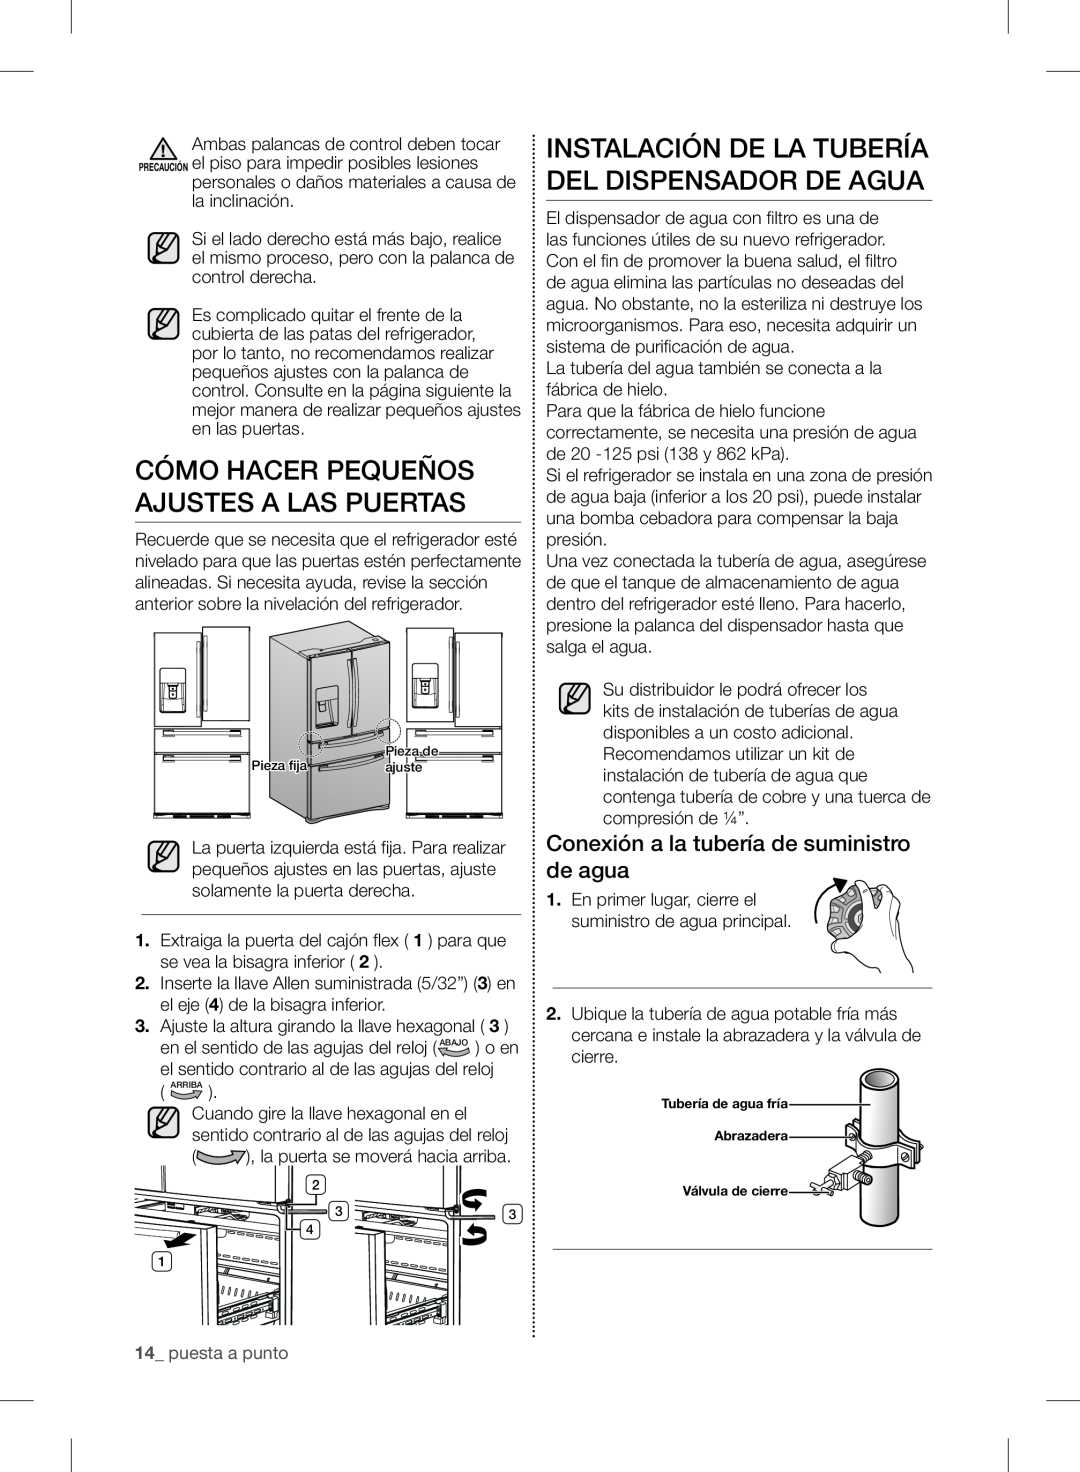 Samsung RF24FSEDBSR Cómo Hacer Pequeños Ajustes A Las Puertas, Instalación De La Tubería Del Dispensador De Agua 